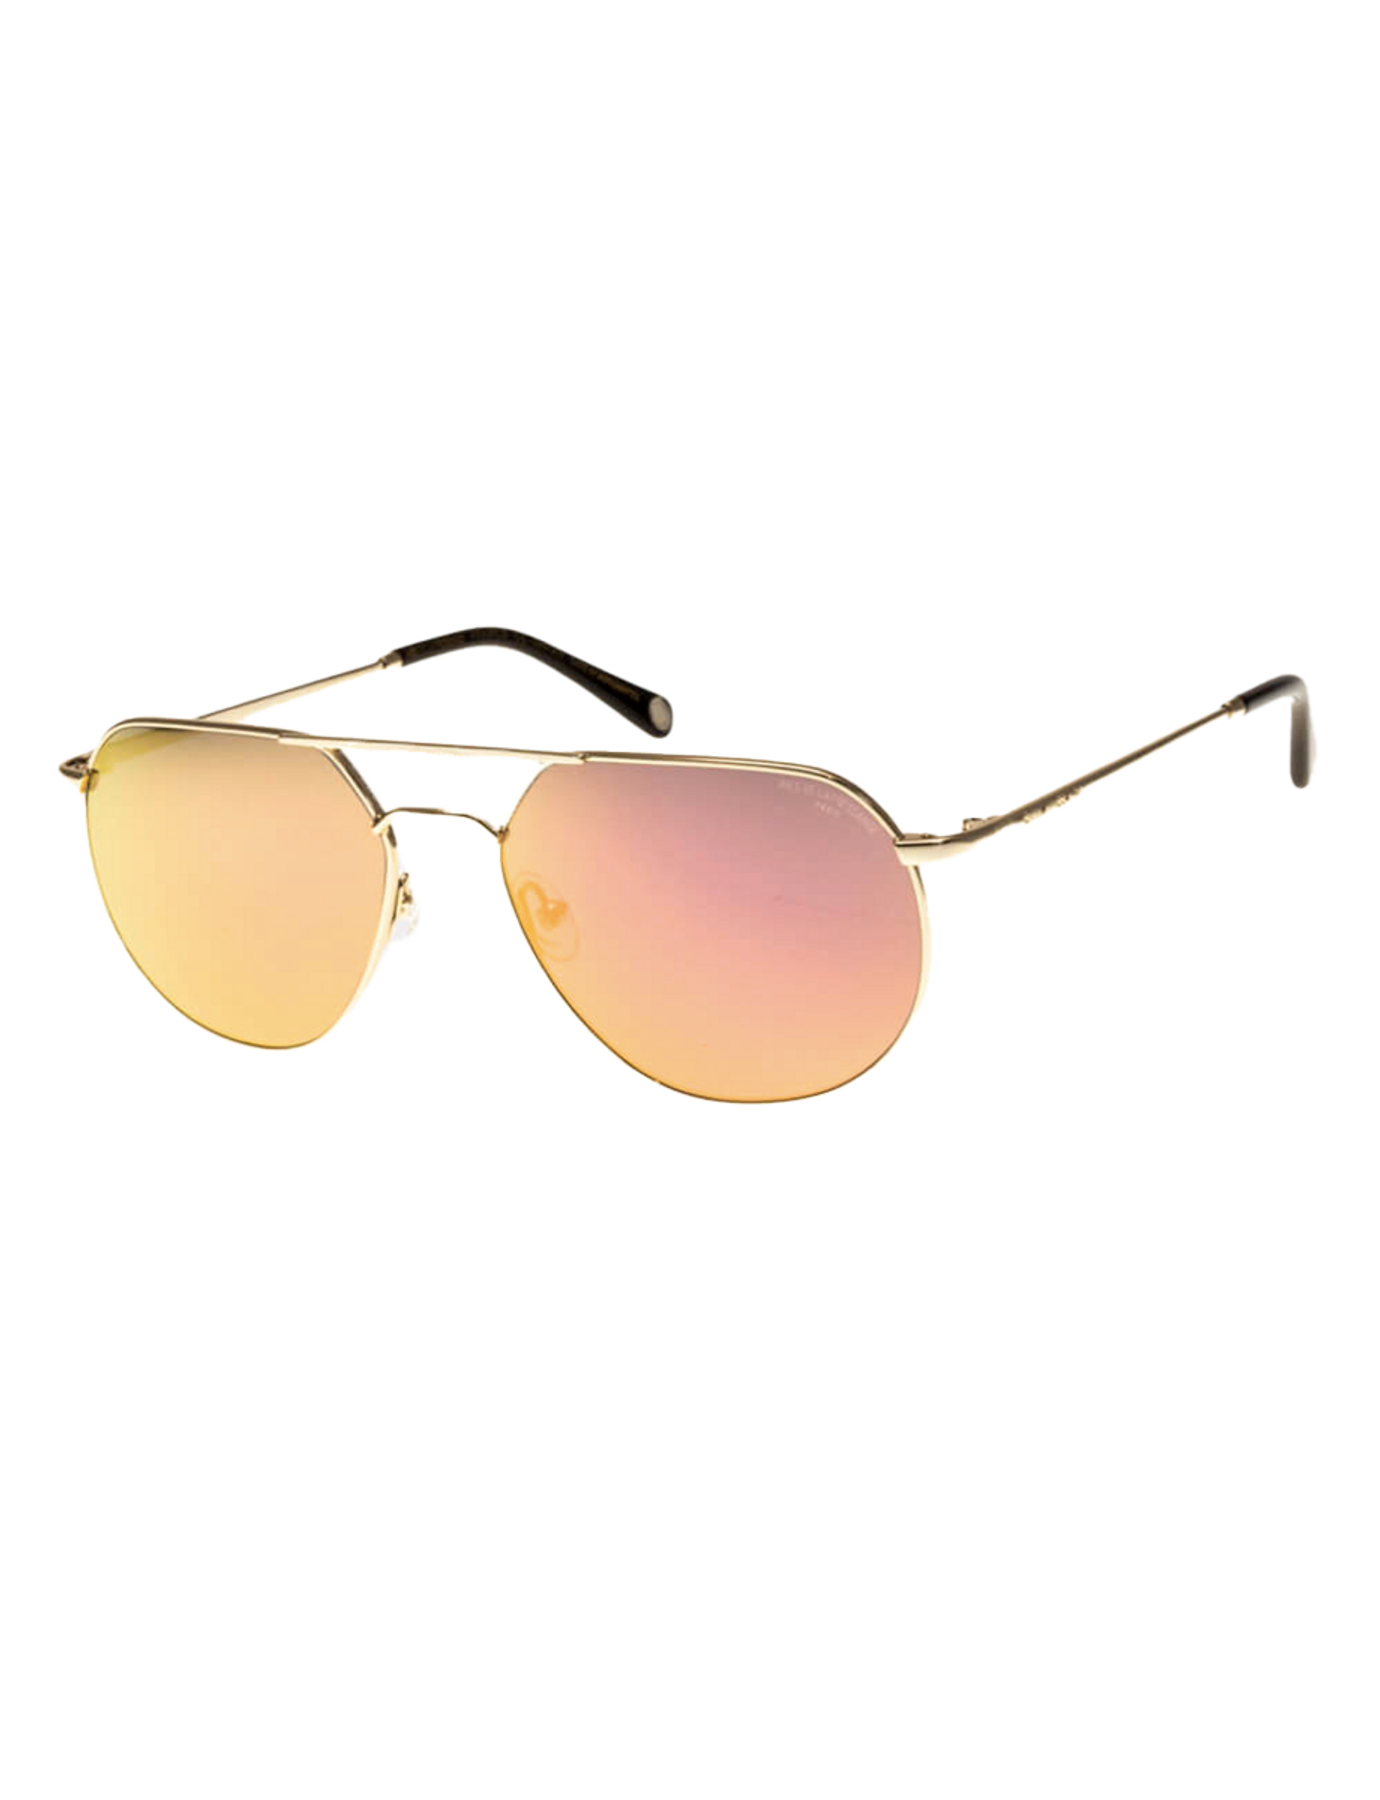 occhiali da sole-gabbia-metallo-oro